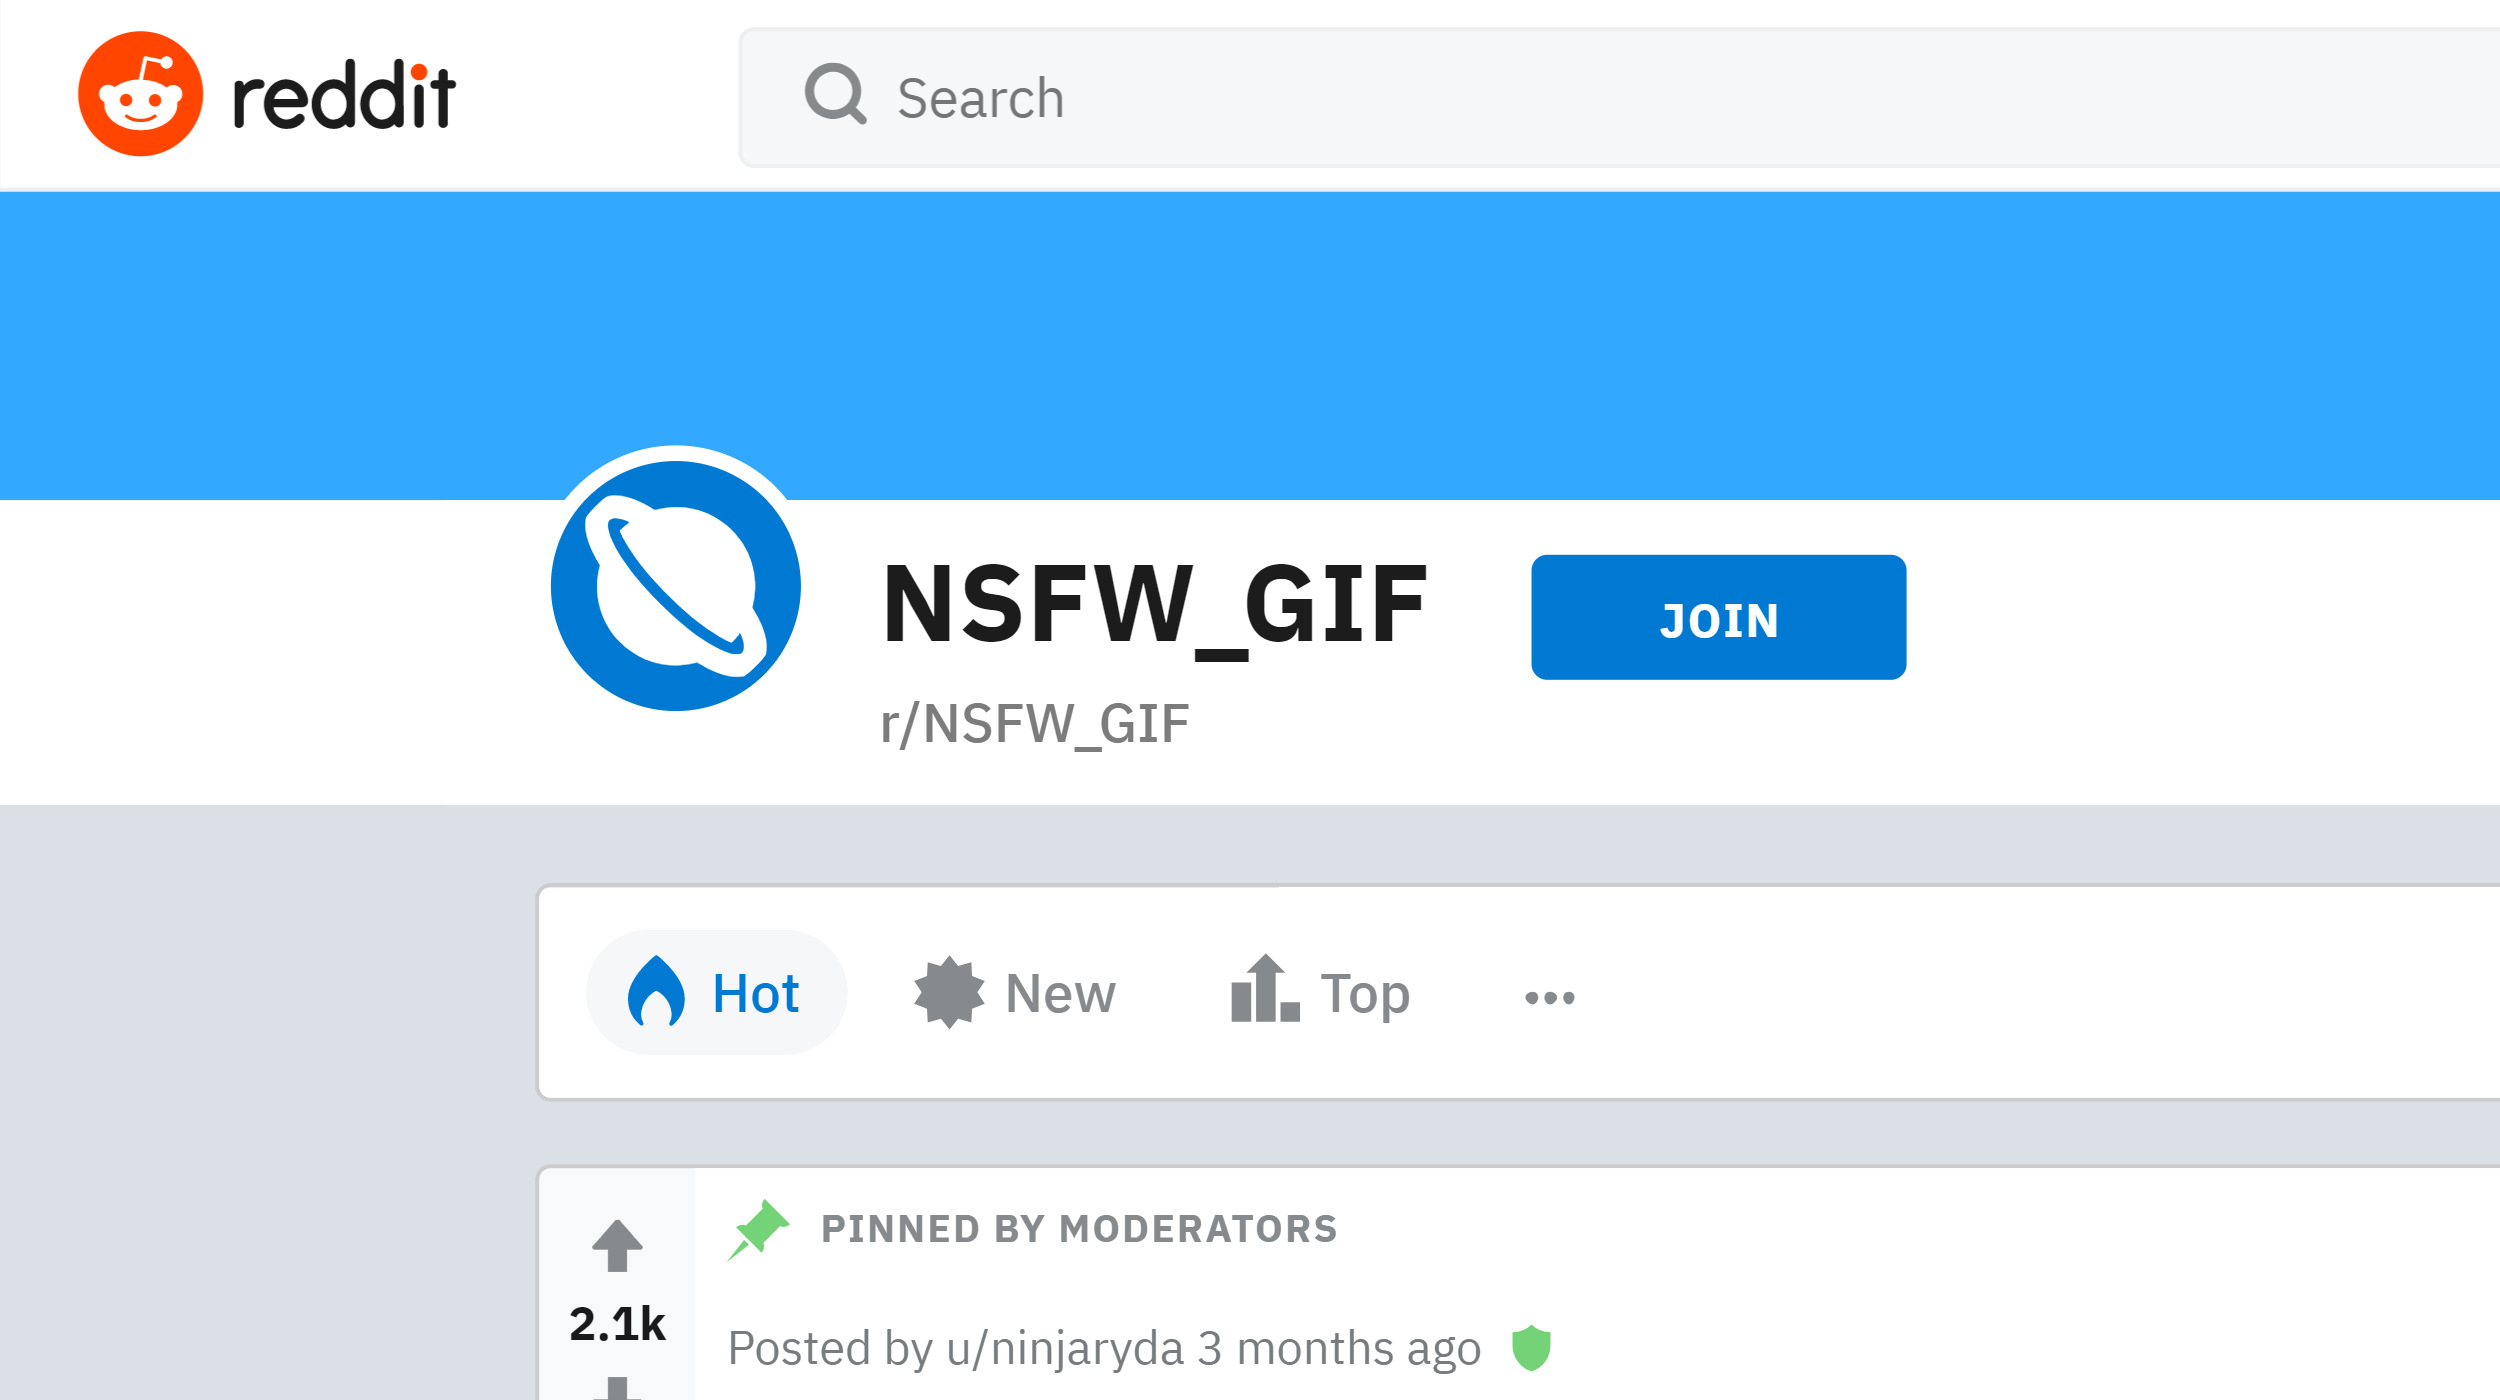 NSFW GIF